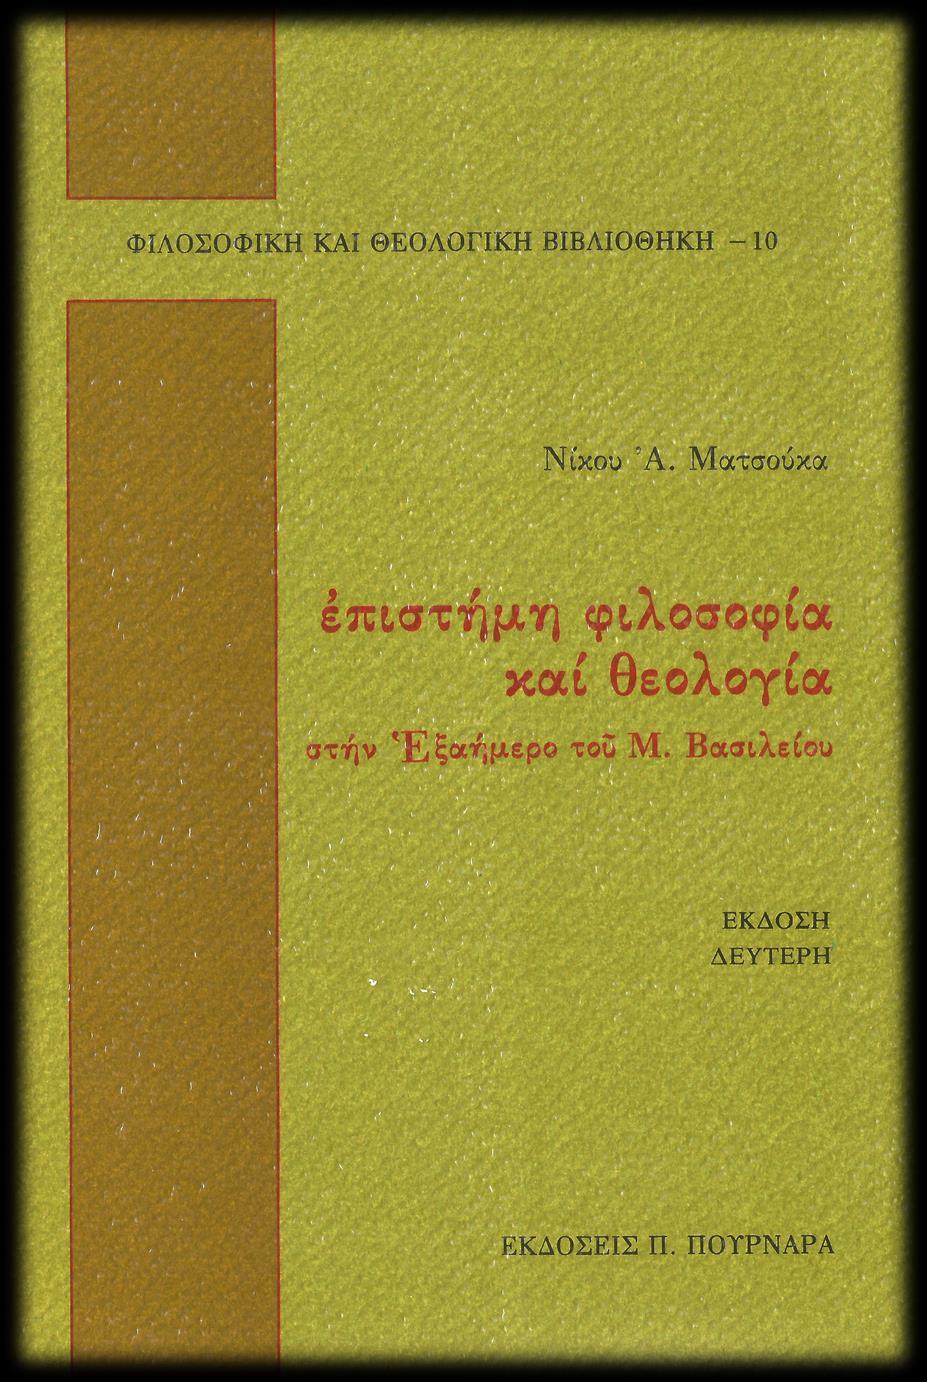 ΝΙΚΟΣ ΜΑΤΣΟΥΚΑΣ, (1990), Επιστήμη, Φιλοσοφία